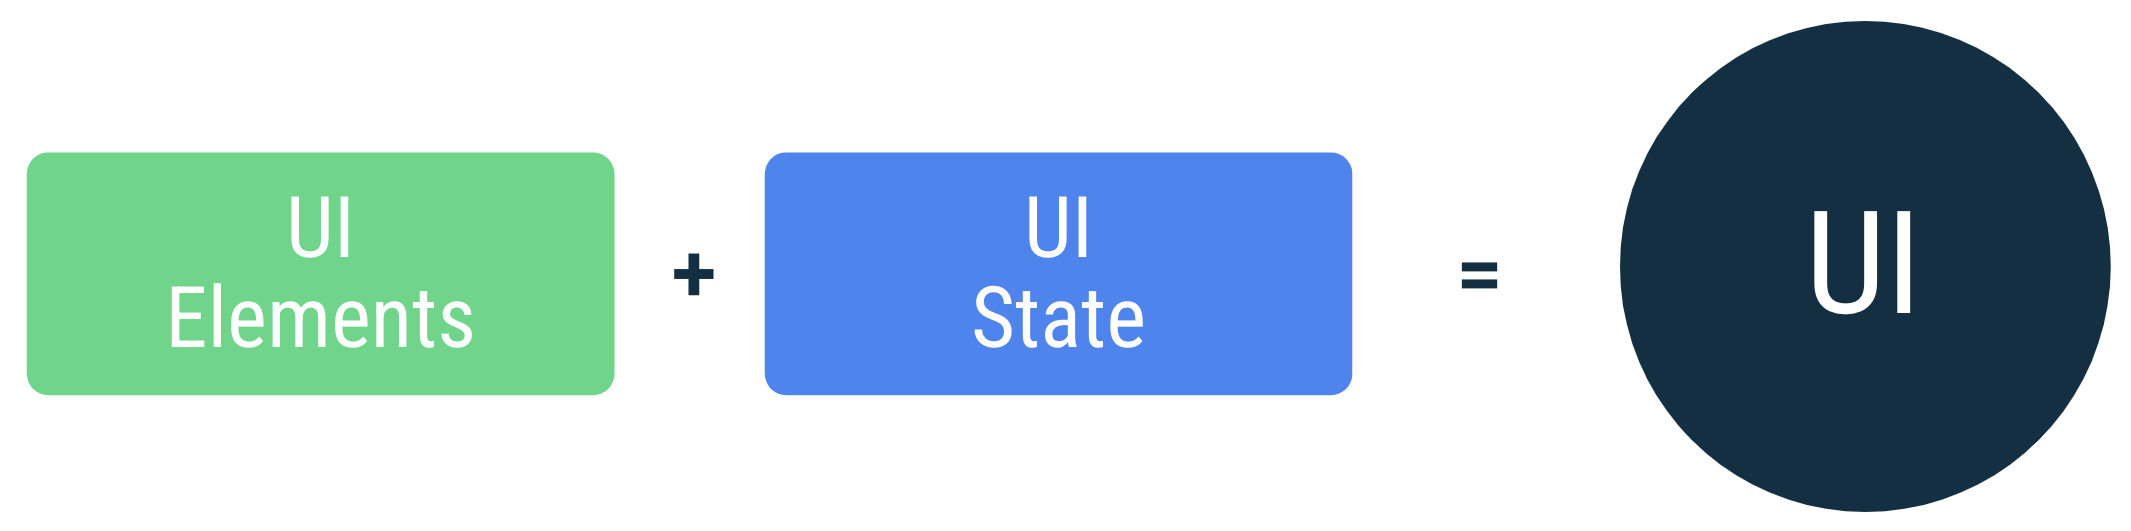 UI হল UI স্টেট সহ স্ক্রিনে UI উপাদানগুলিকে আবদ্ধ করার ফলাফল।